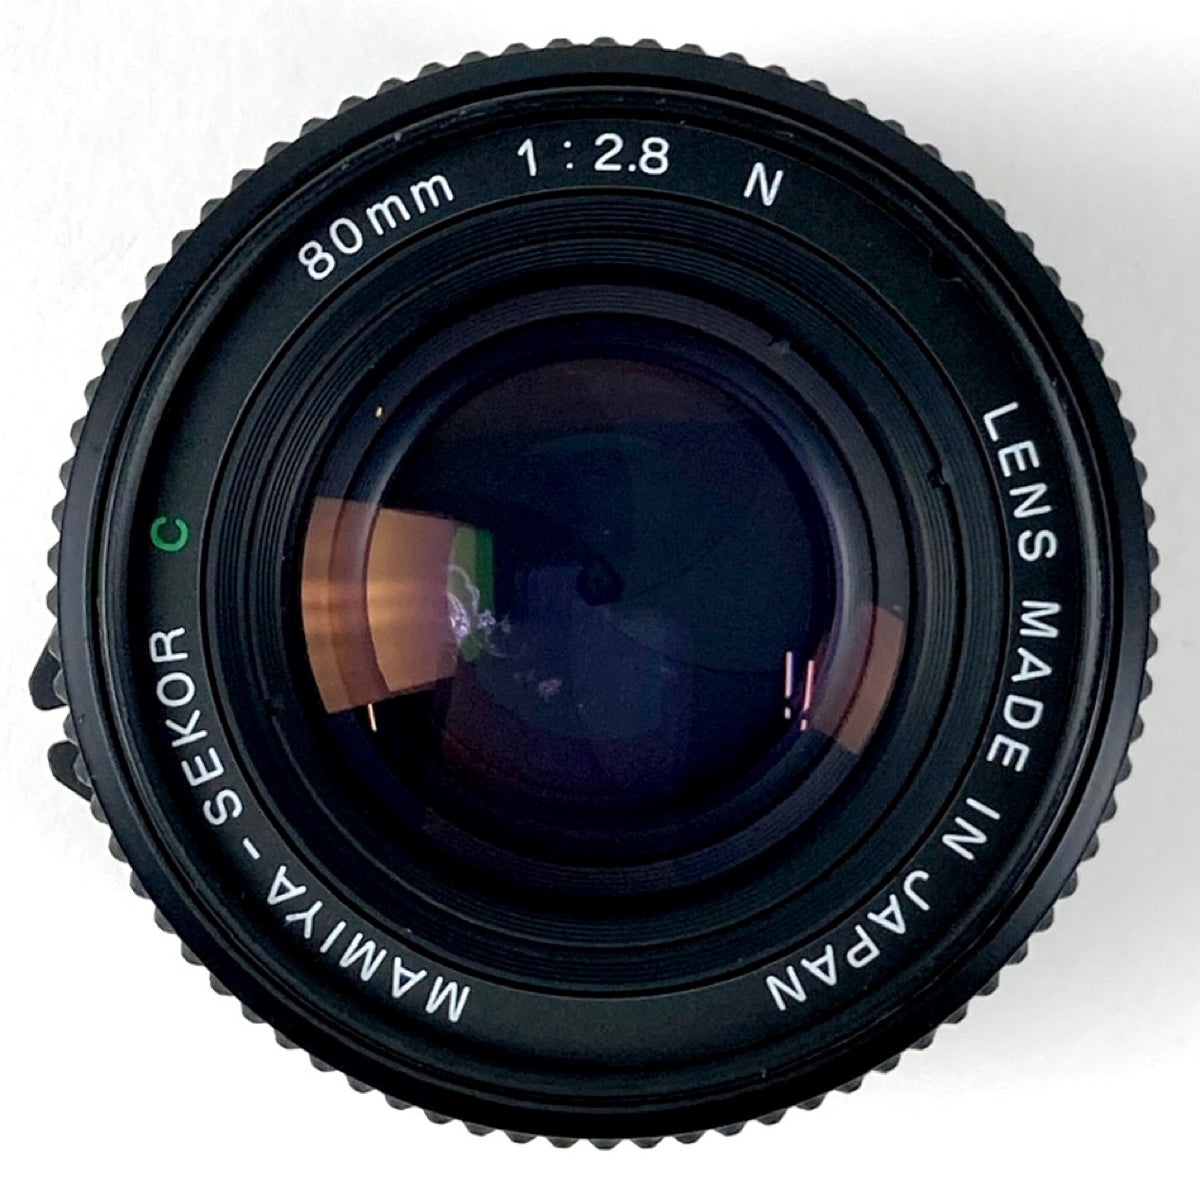 バイセル公式】マミヤ Mamiya 645 PRO + SEKOR C 80mm F2.8N 中判カメラ 【中古】 - バイセルブランシェ